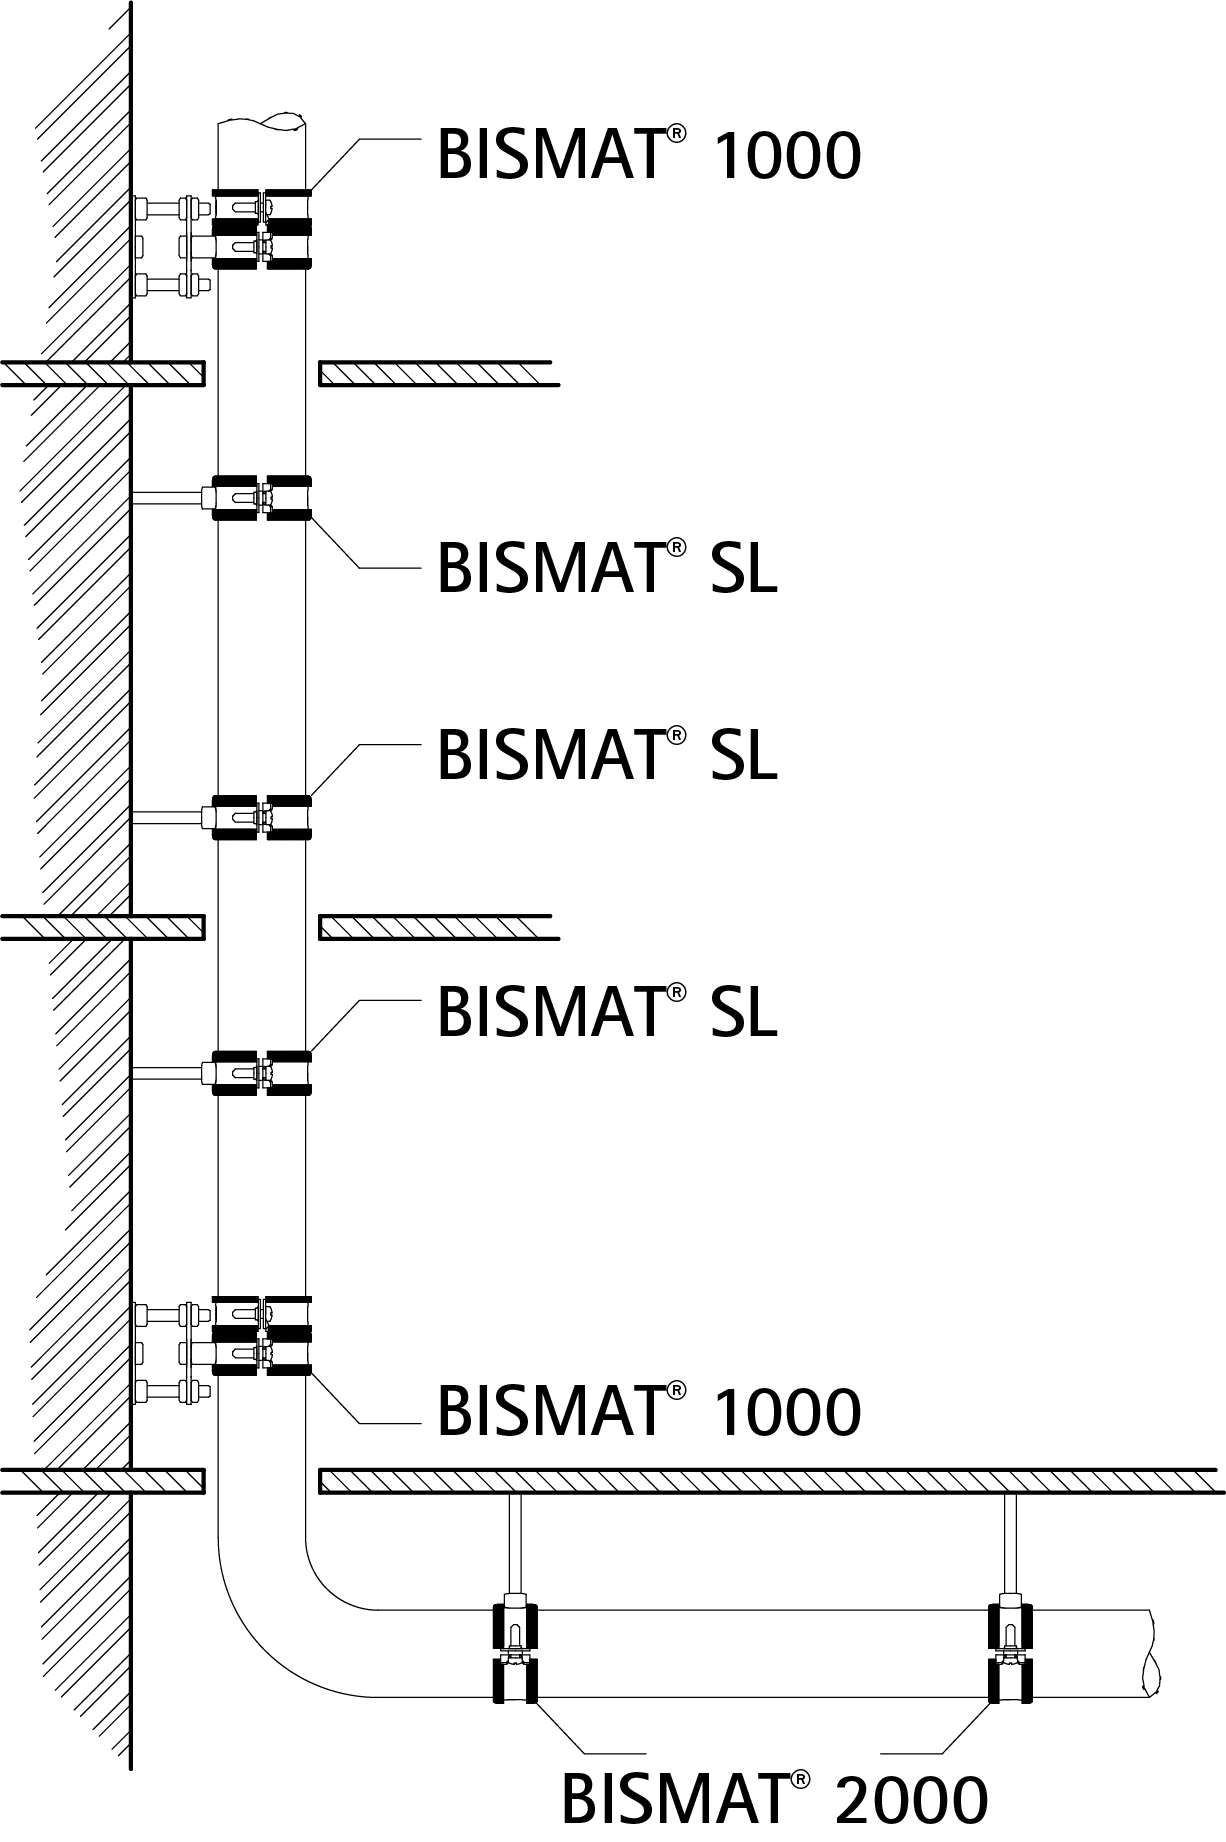 Bismat 1000 system drawing